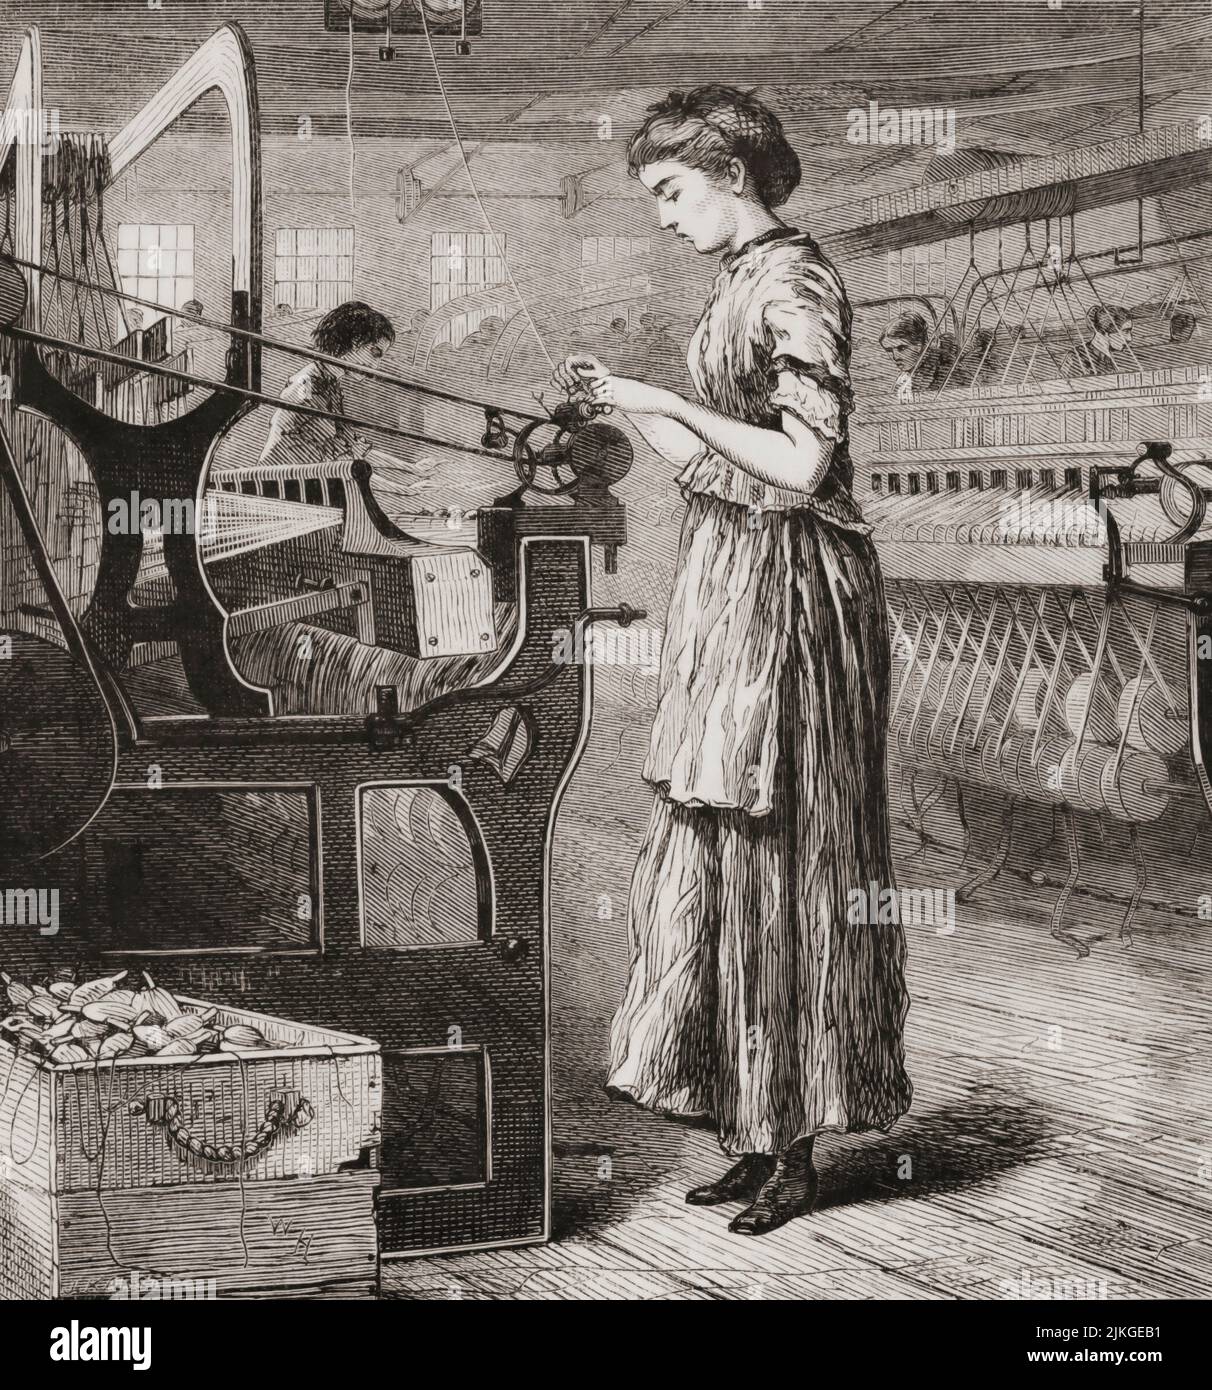 Frau, die im 19.. Jahrhundert in einer Fabrik an einem Webstuhl arbeitete, Vereinigte Staaten von Amerika. Nach einer Illustration von Winslow Homer. Stockfoto